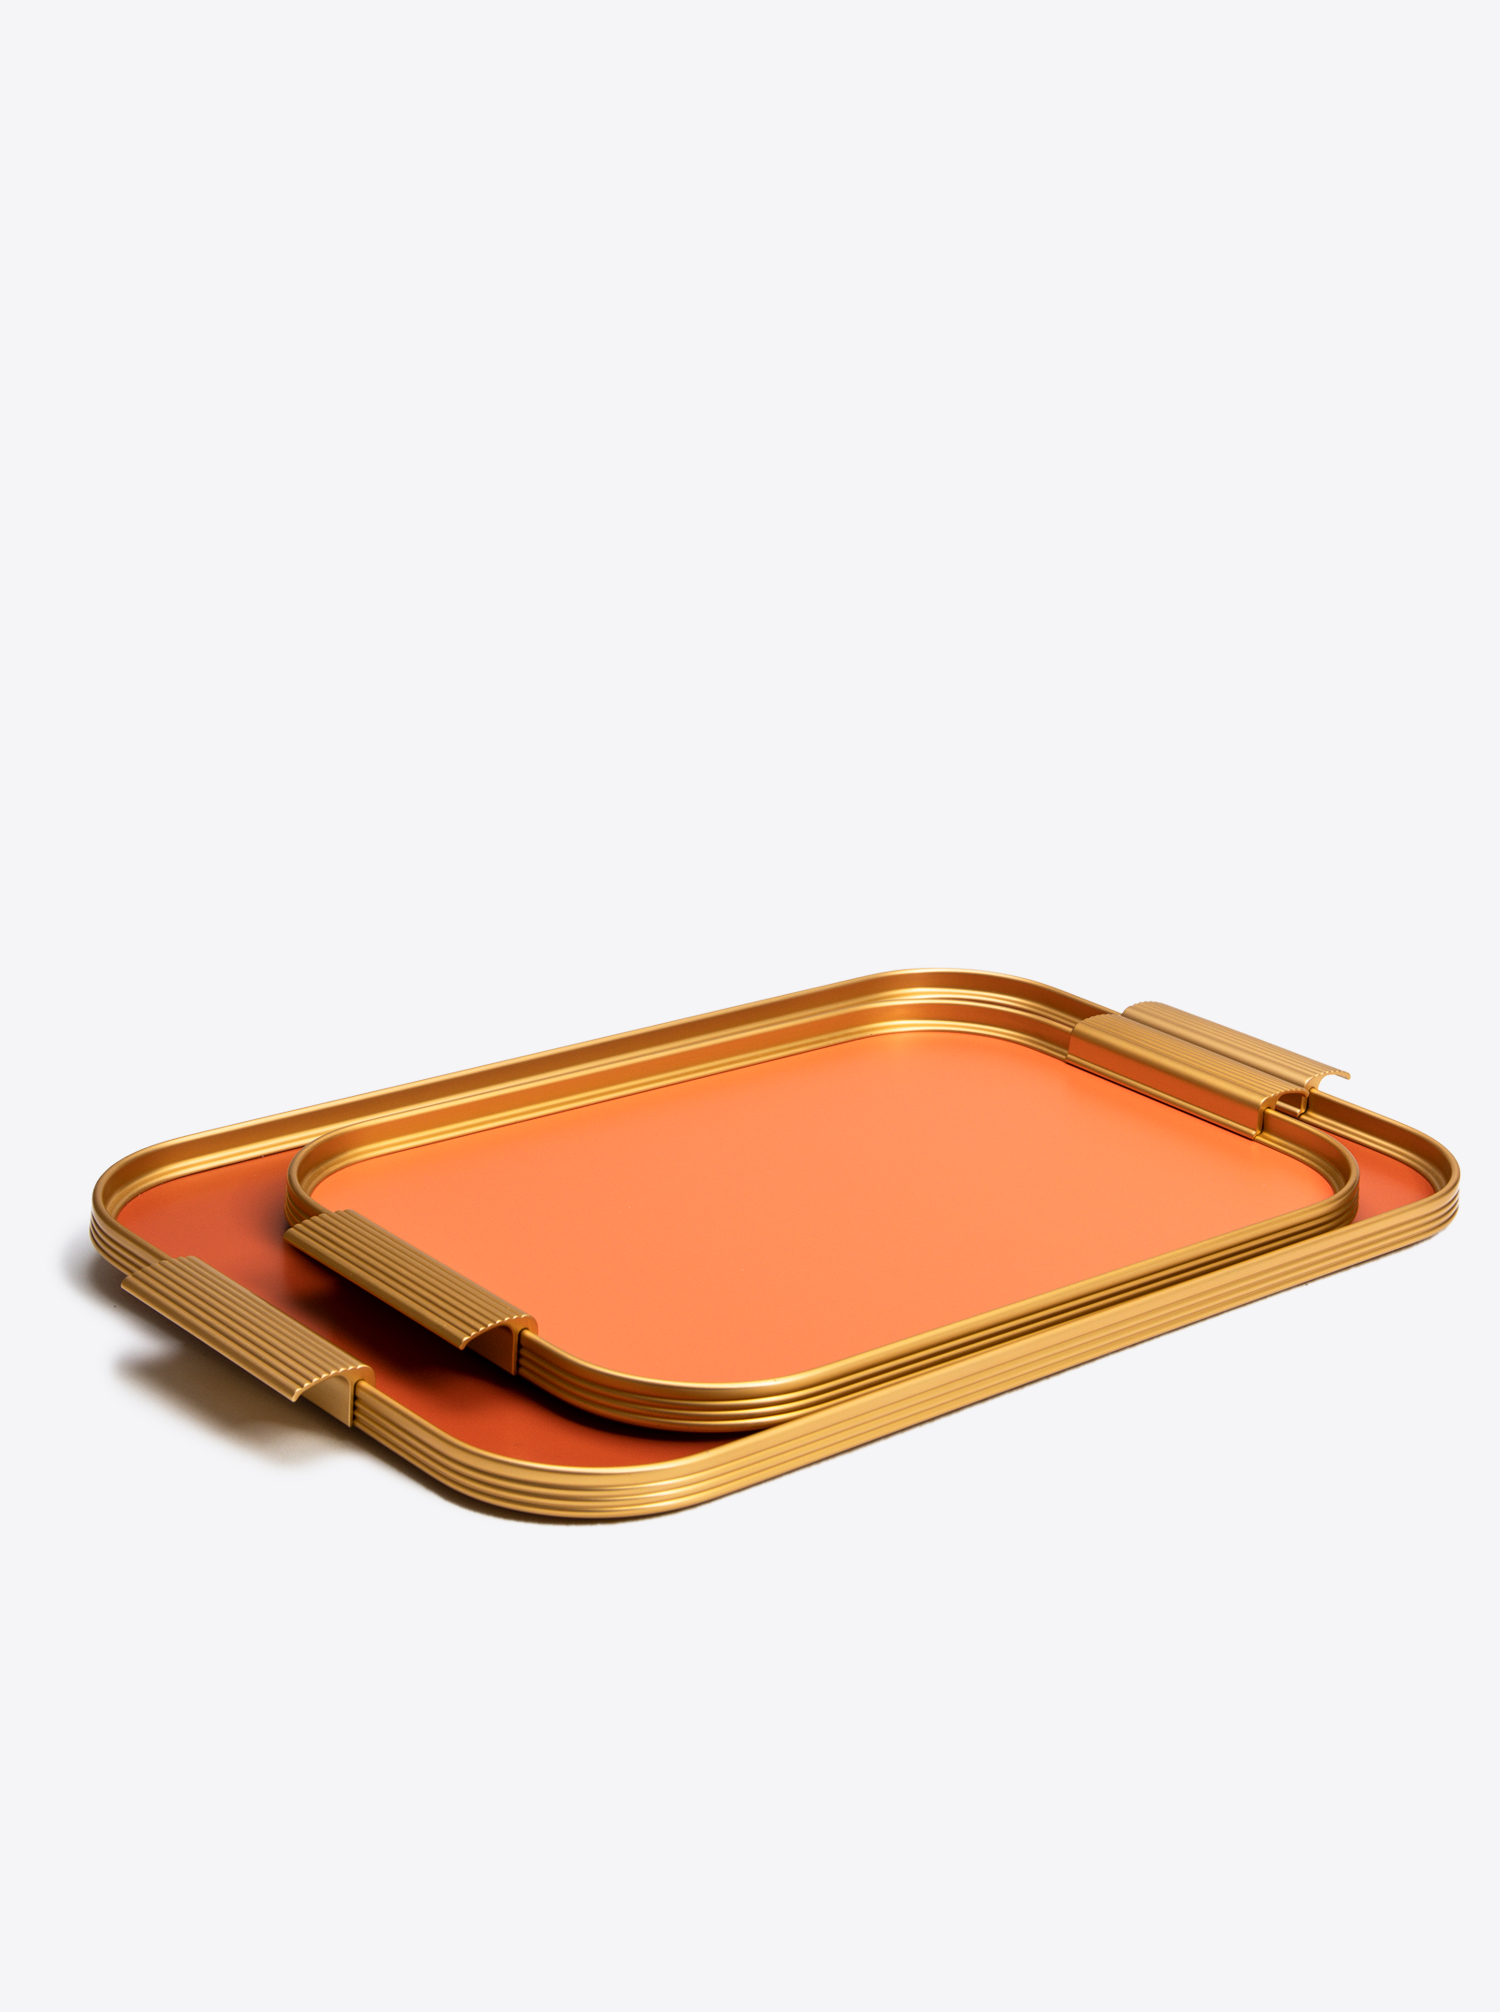 Tray Aluminium L 46 x 30cm in Burnt Orange / Gold